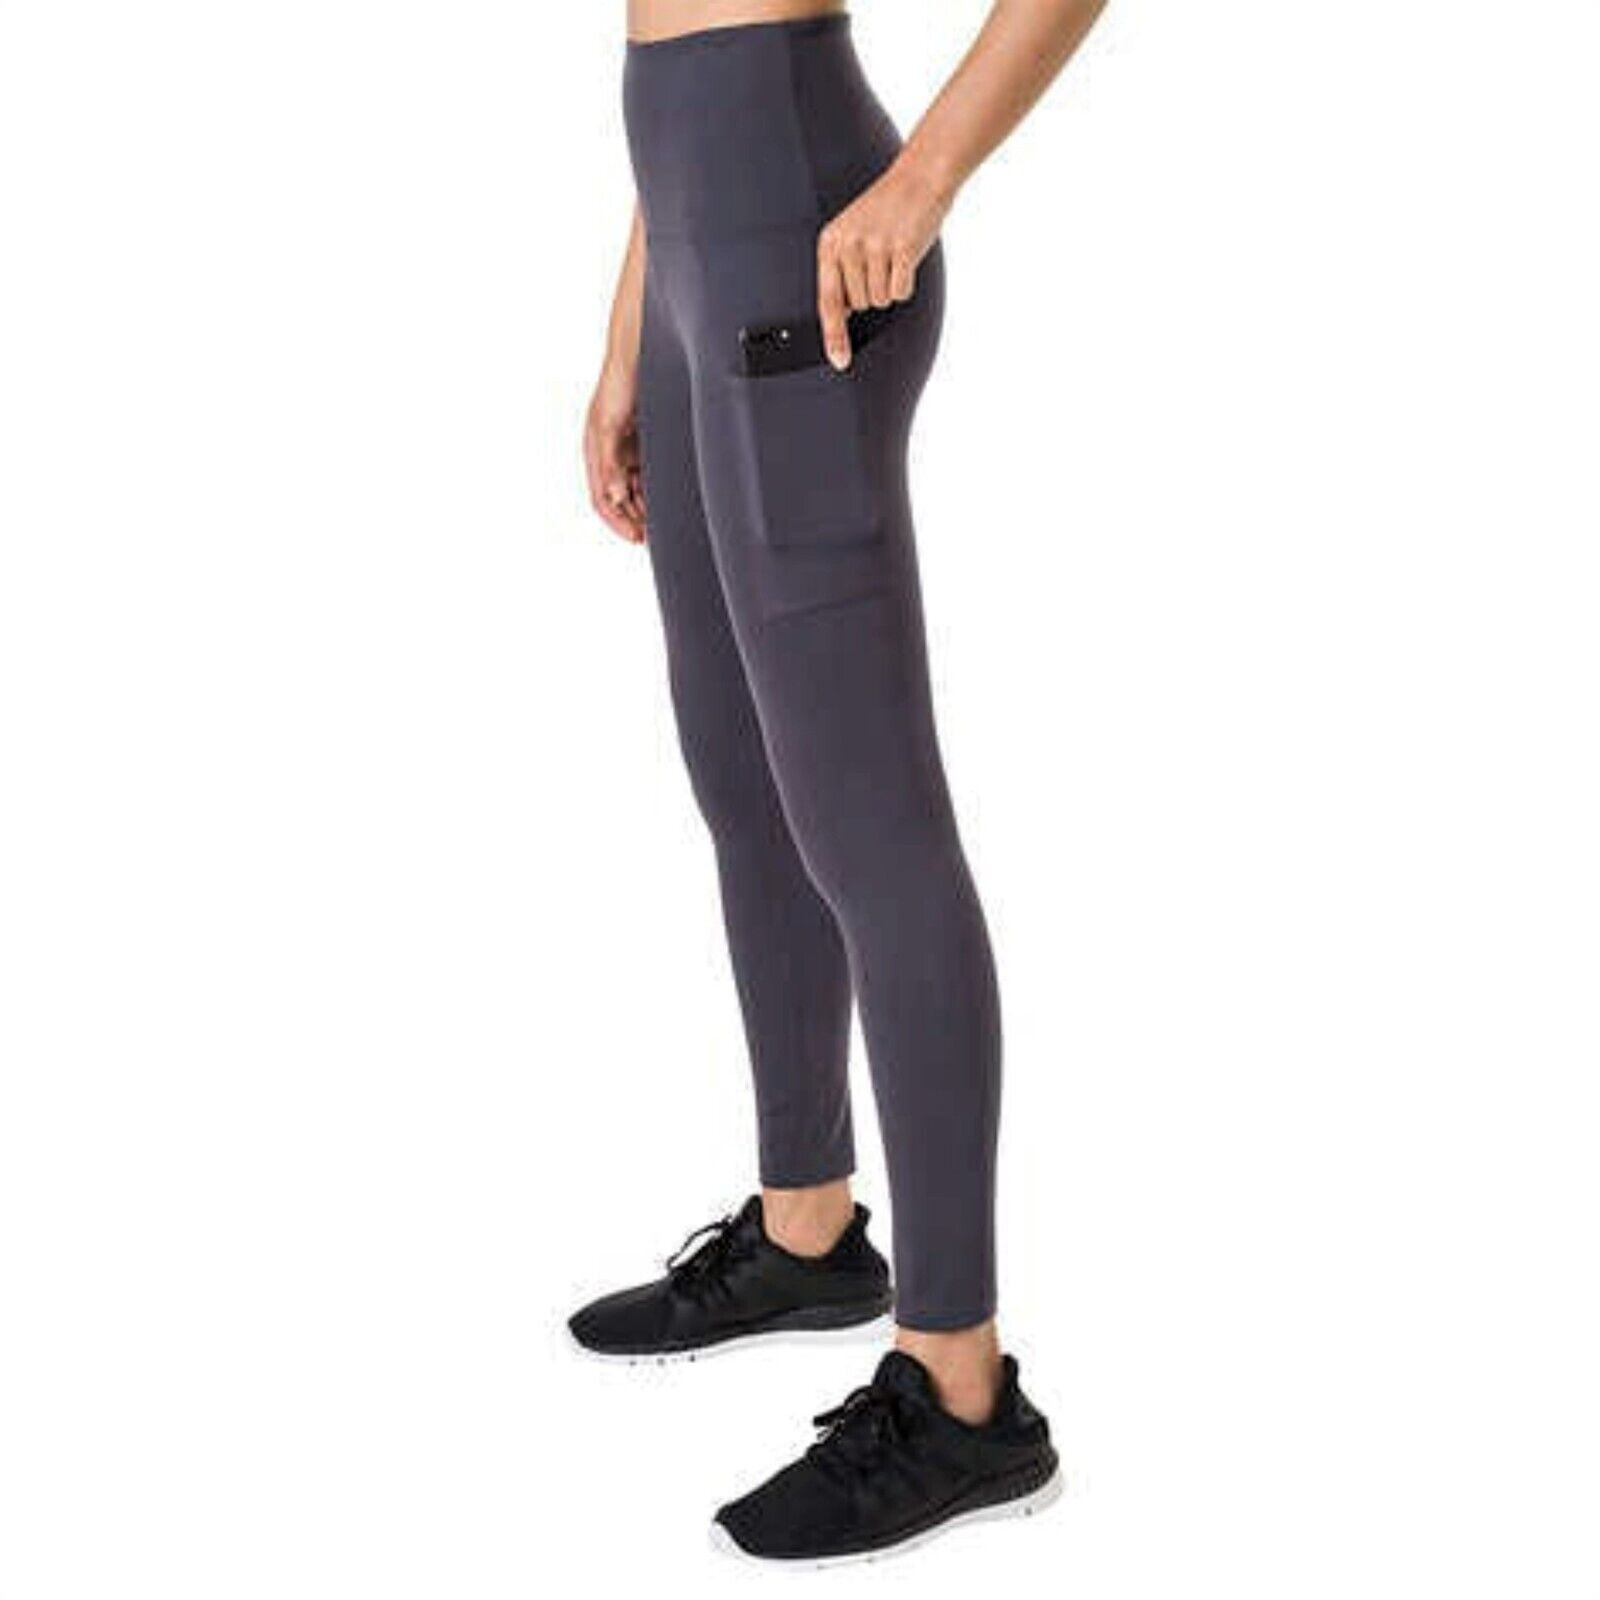 Tuff Athletics® Ladies' Printed Active Yoga Legging With Zipper